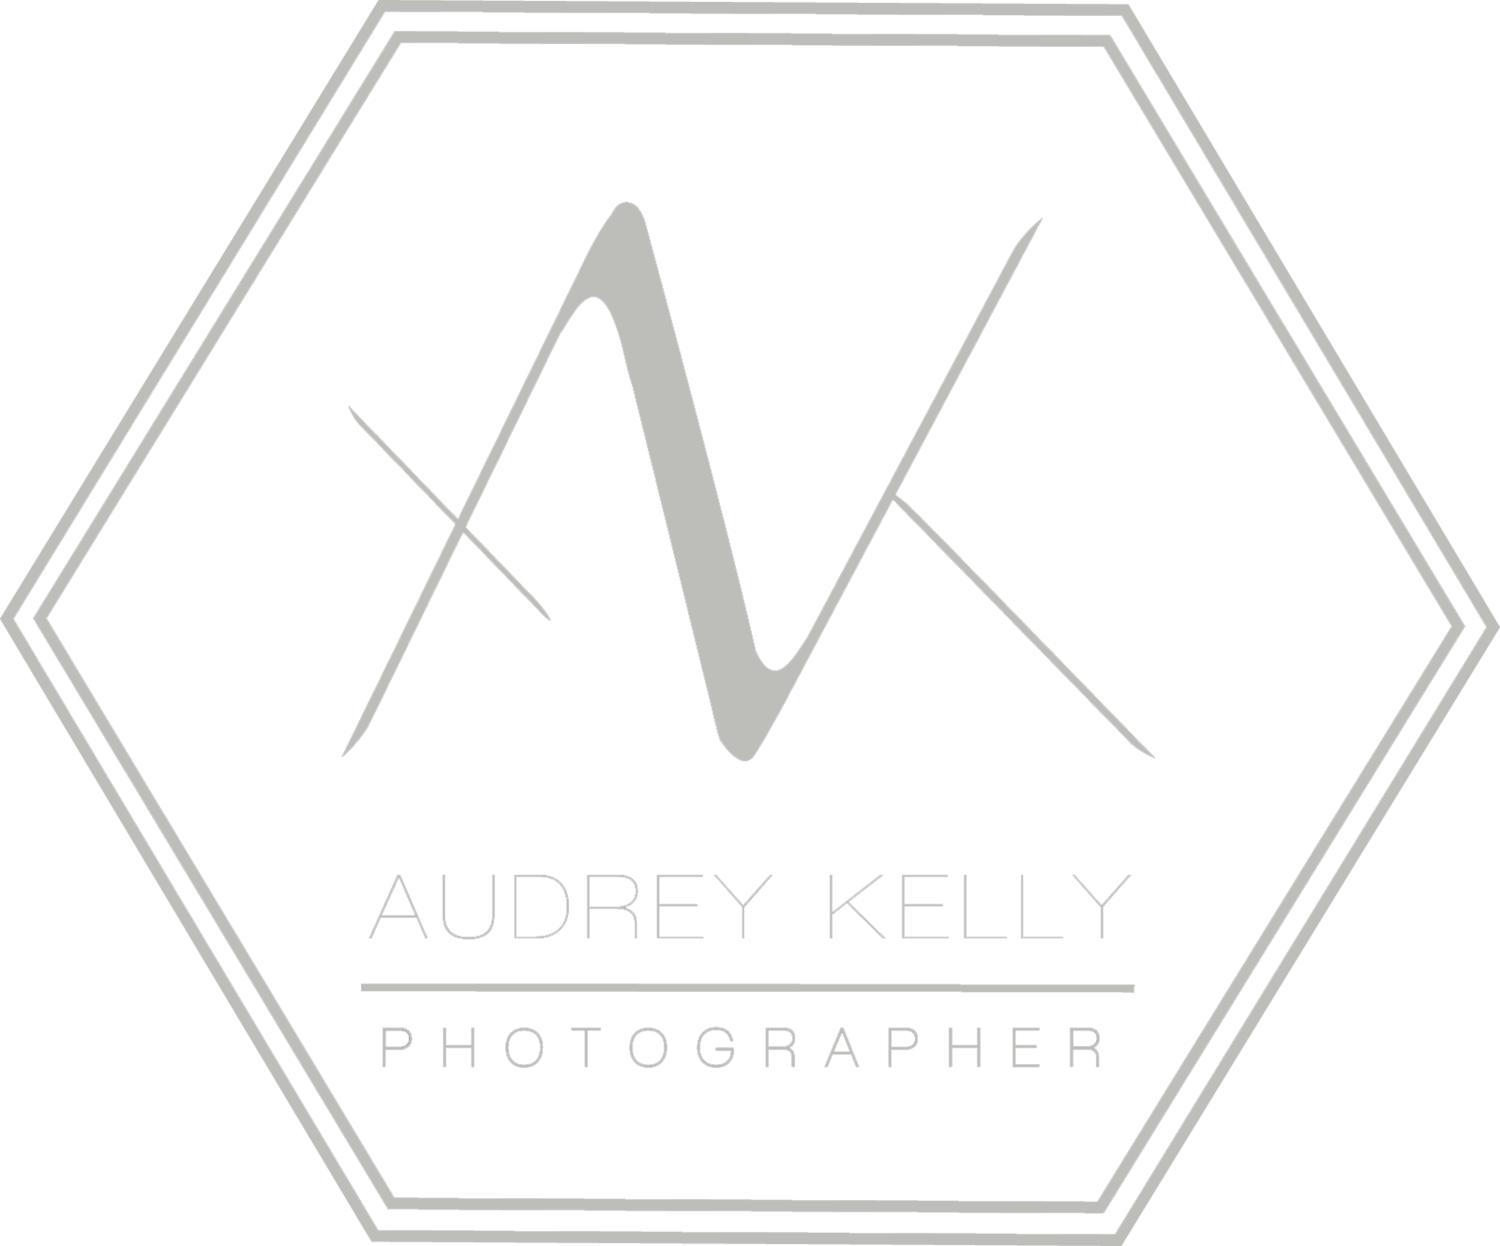 Audrey Kelly Photographer